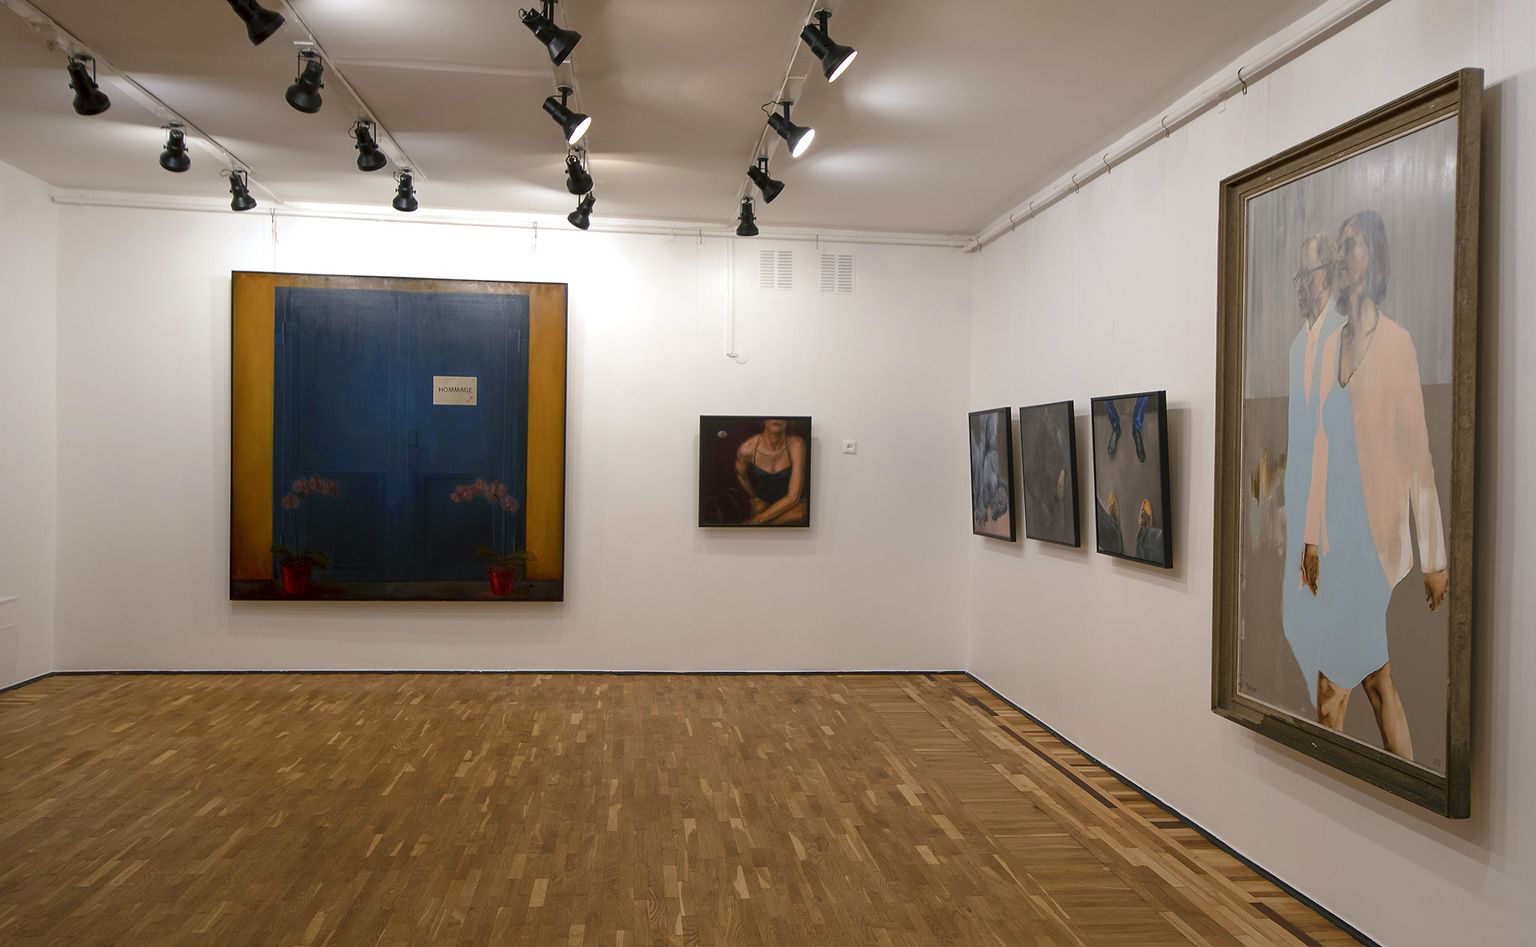 Mauri Grossi näitus "Suguvõsa 4" Jõhvi kunstikooli galeriis.